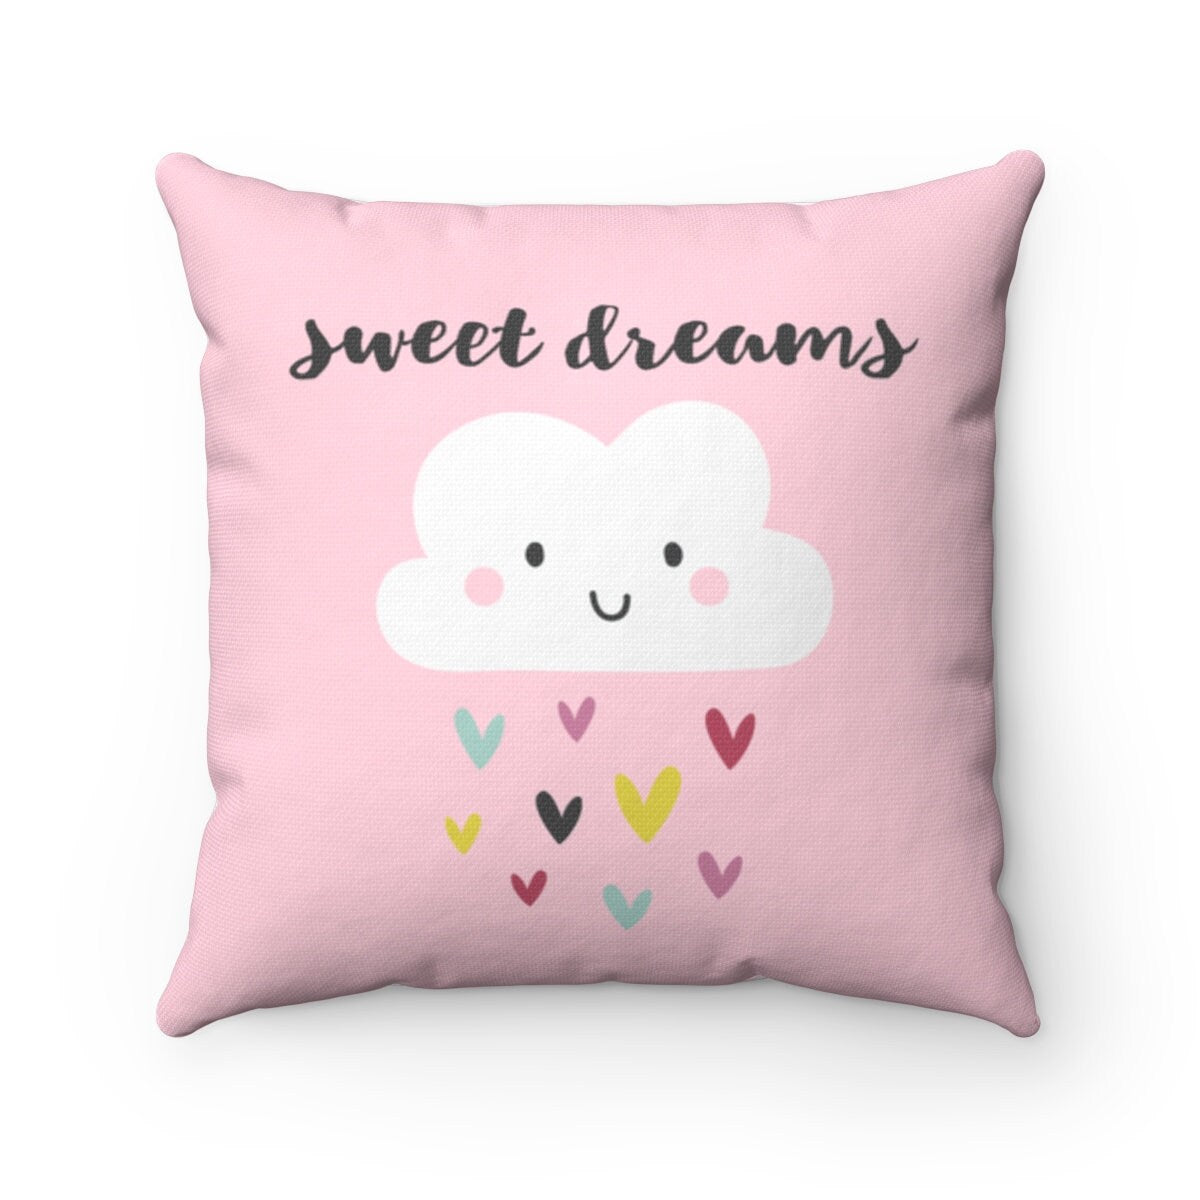 CUSTOM ORDER, Cloud Nursery, Cloud Pillow, Kid's Pillow, Pillow, Toddler Room Decor, Decorative Pillow, Decorative Pillow